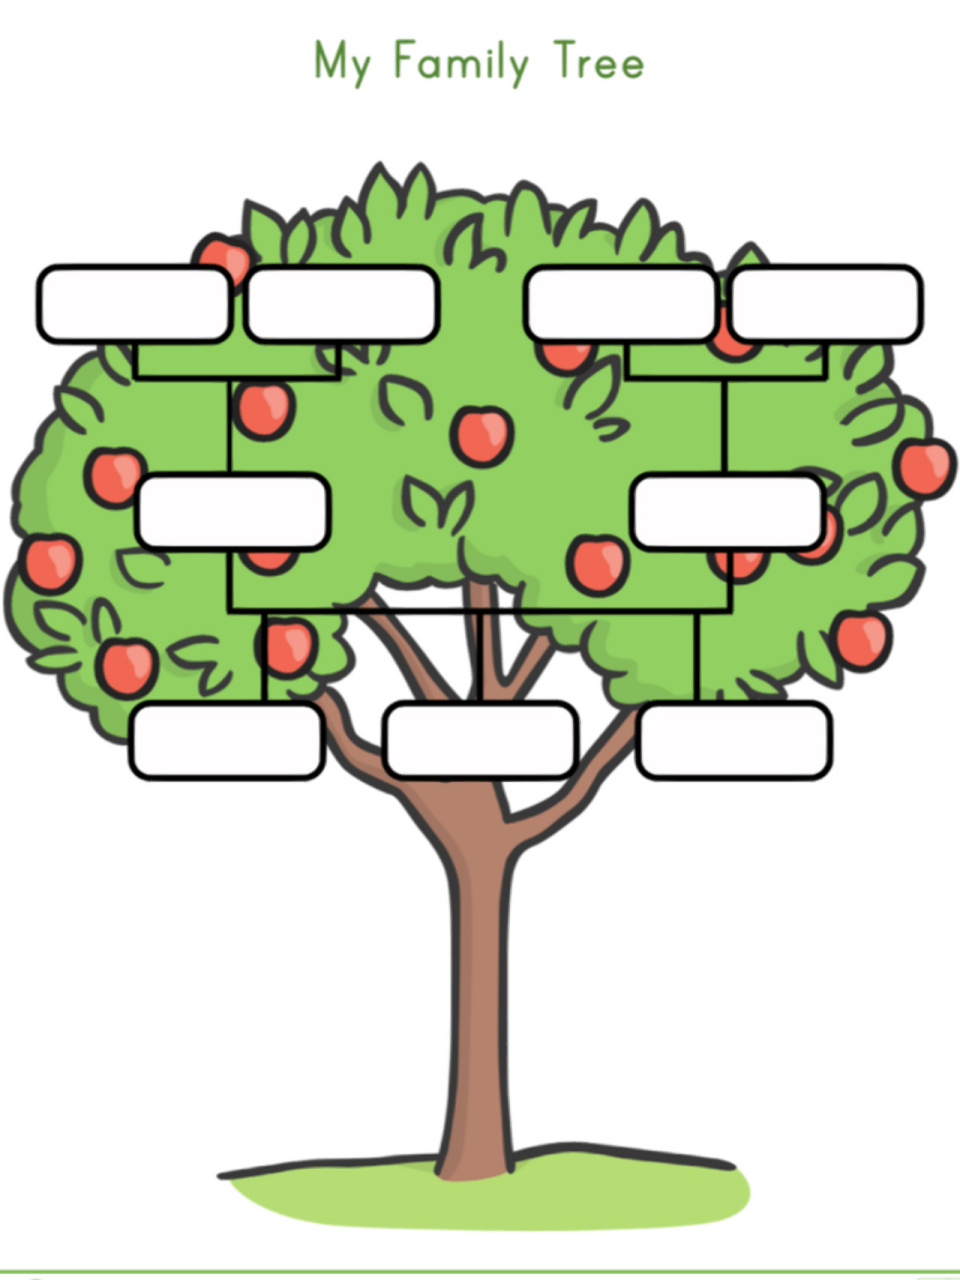 家族树谱系树图片